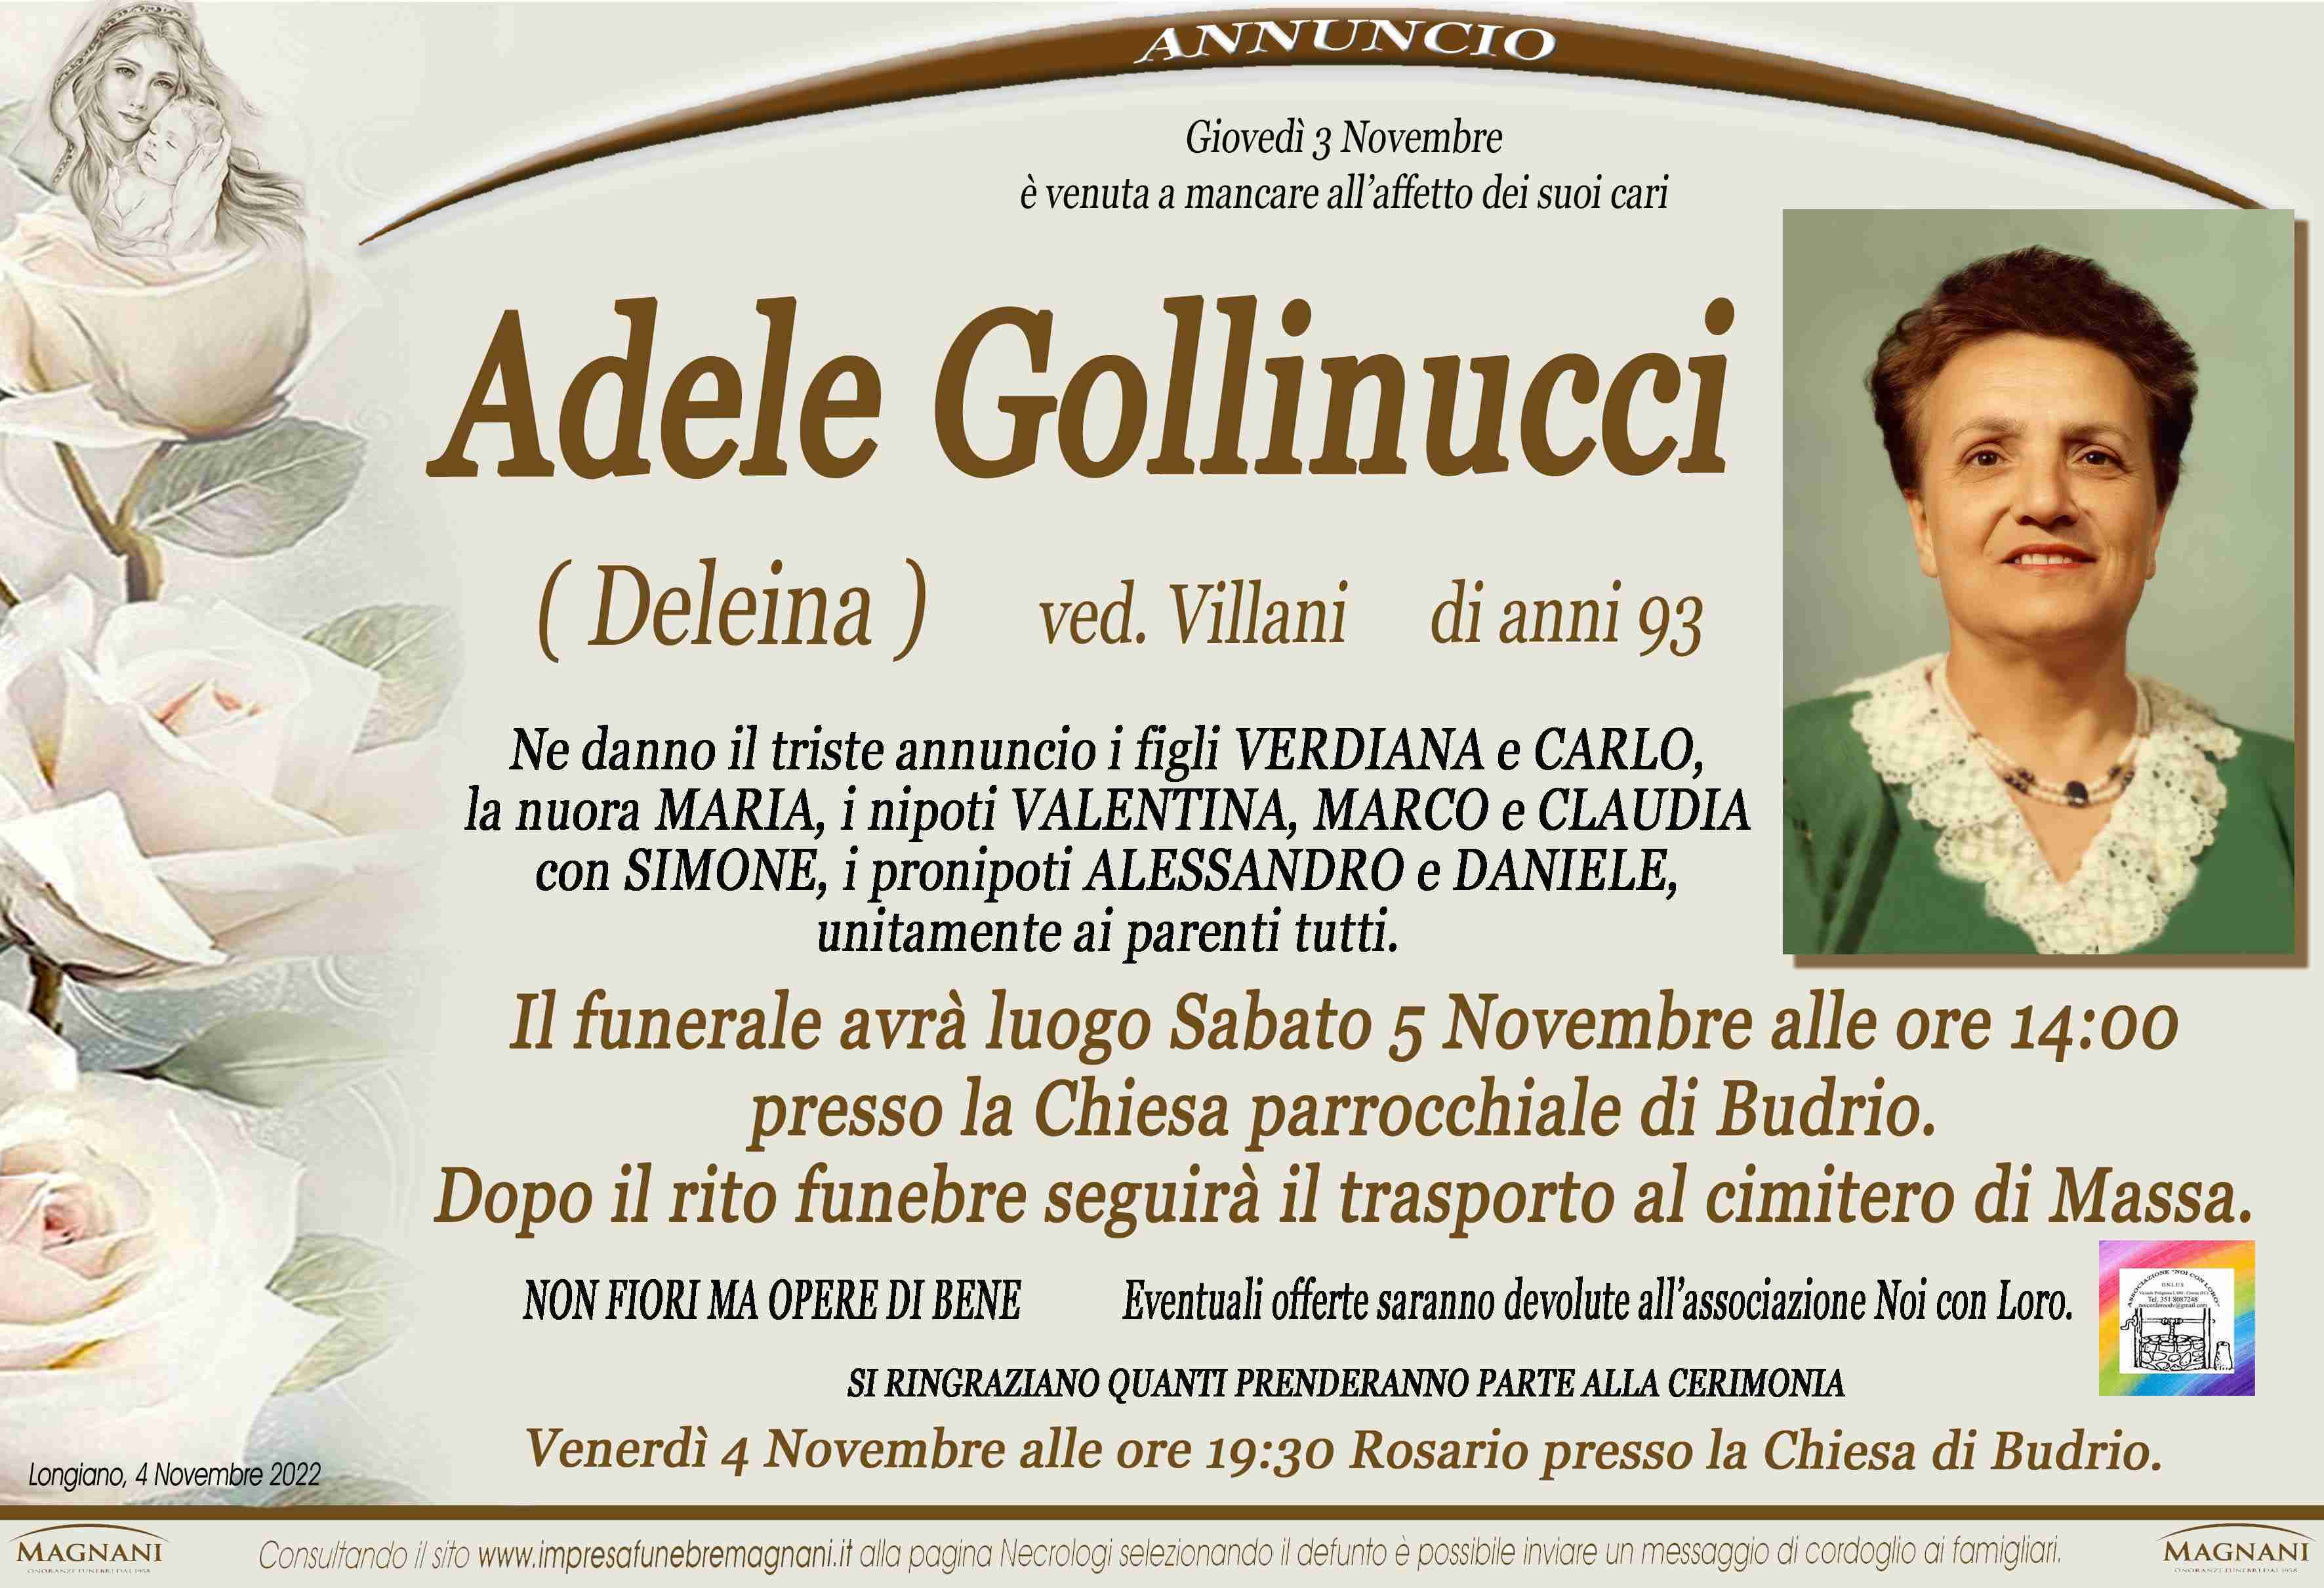 Adele Gollinucci